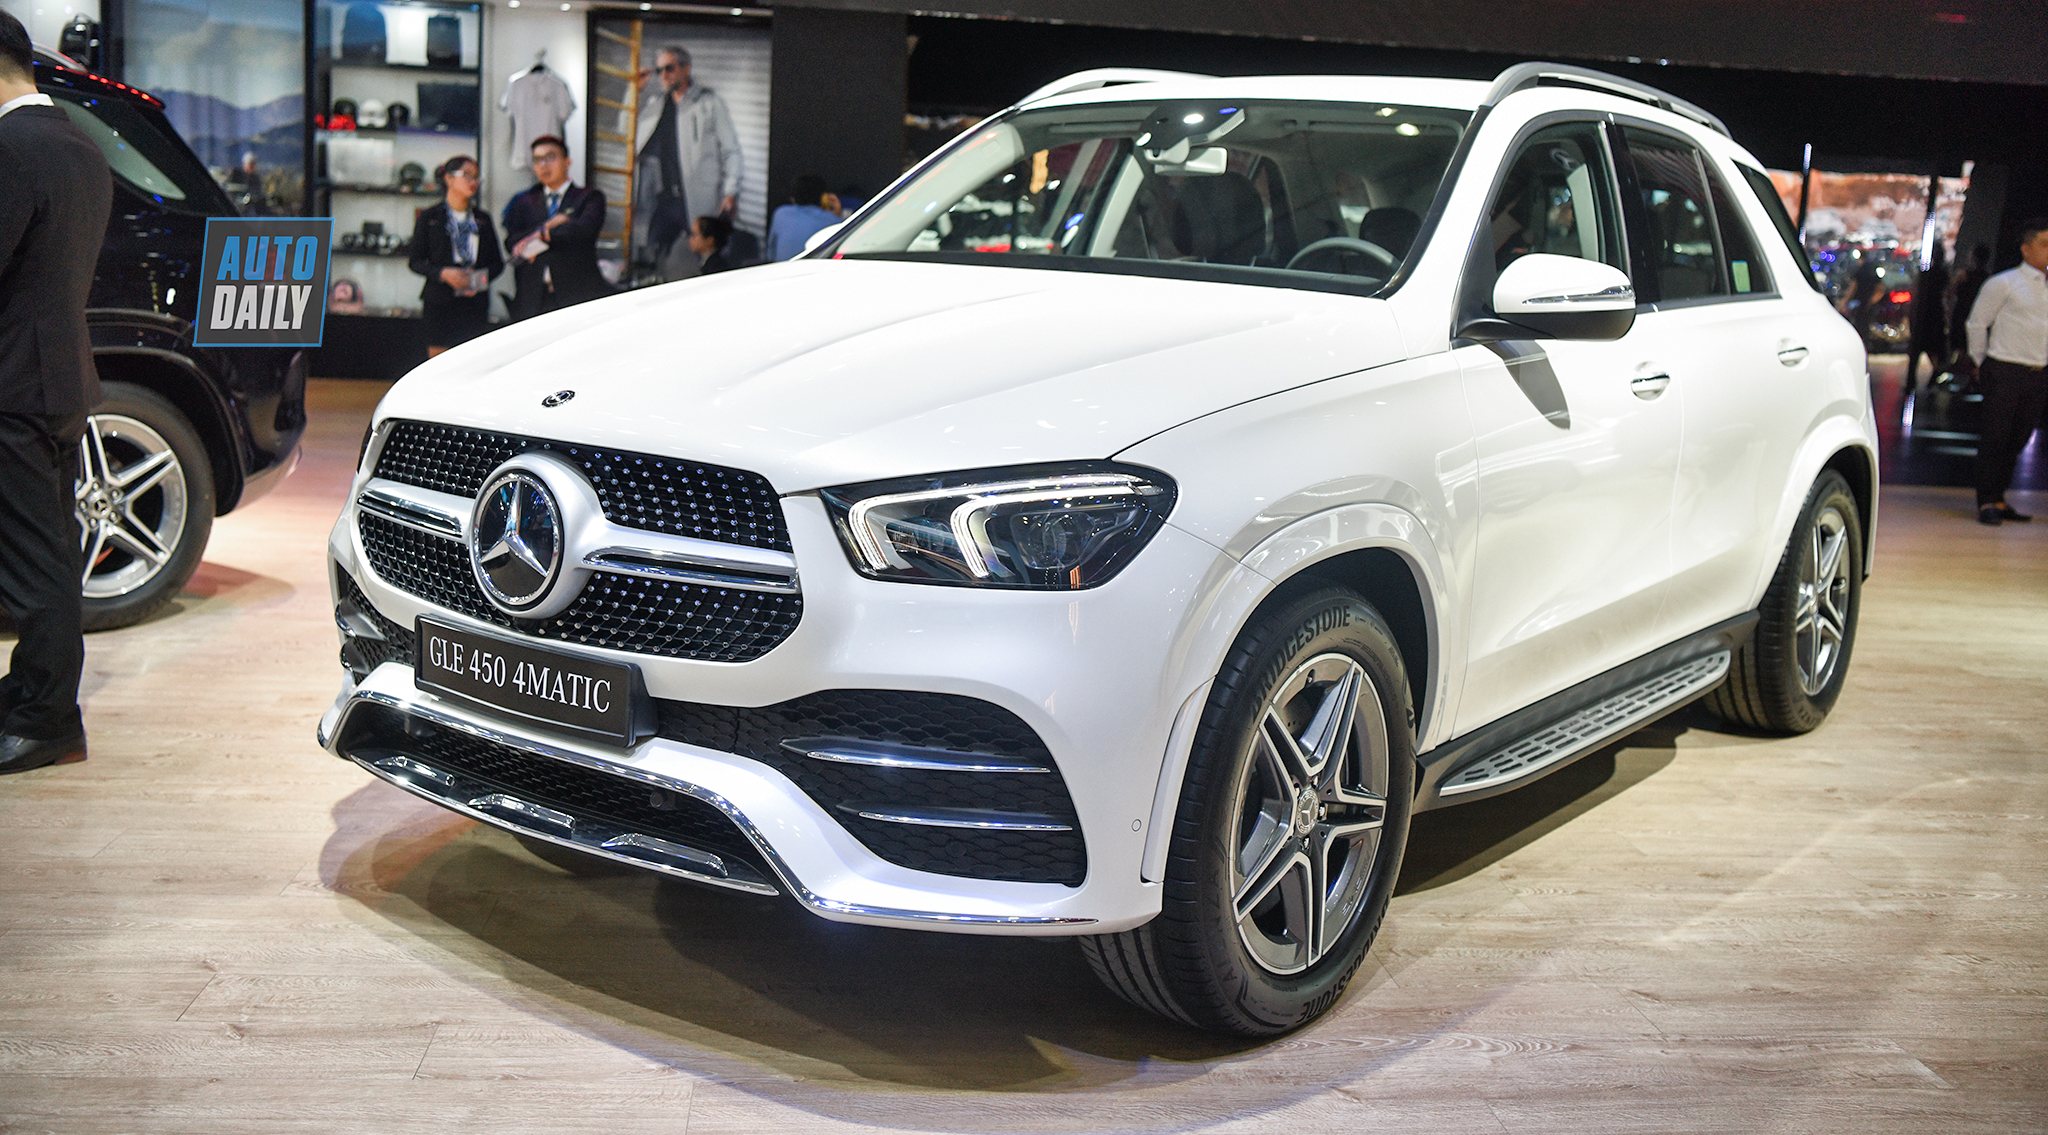 Chi tiết Mercedes-Benz GLE 450 4MATIC 2019 gía hơn 4,3 tỷ đồng